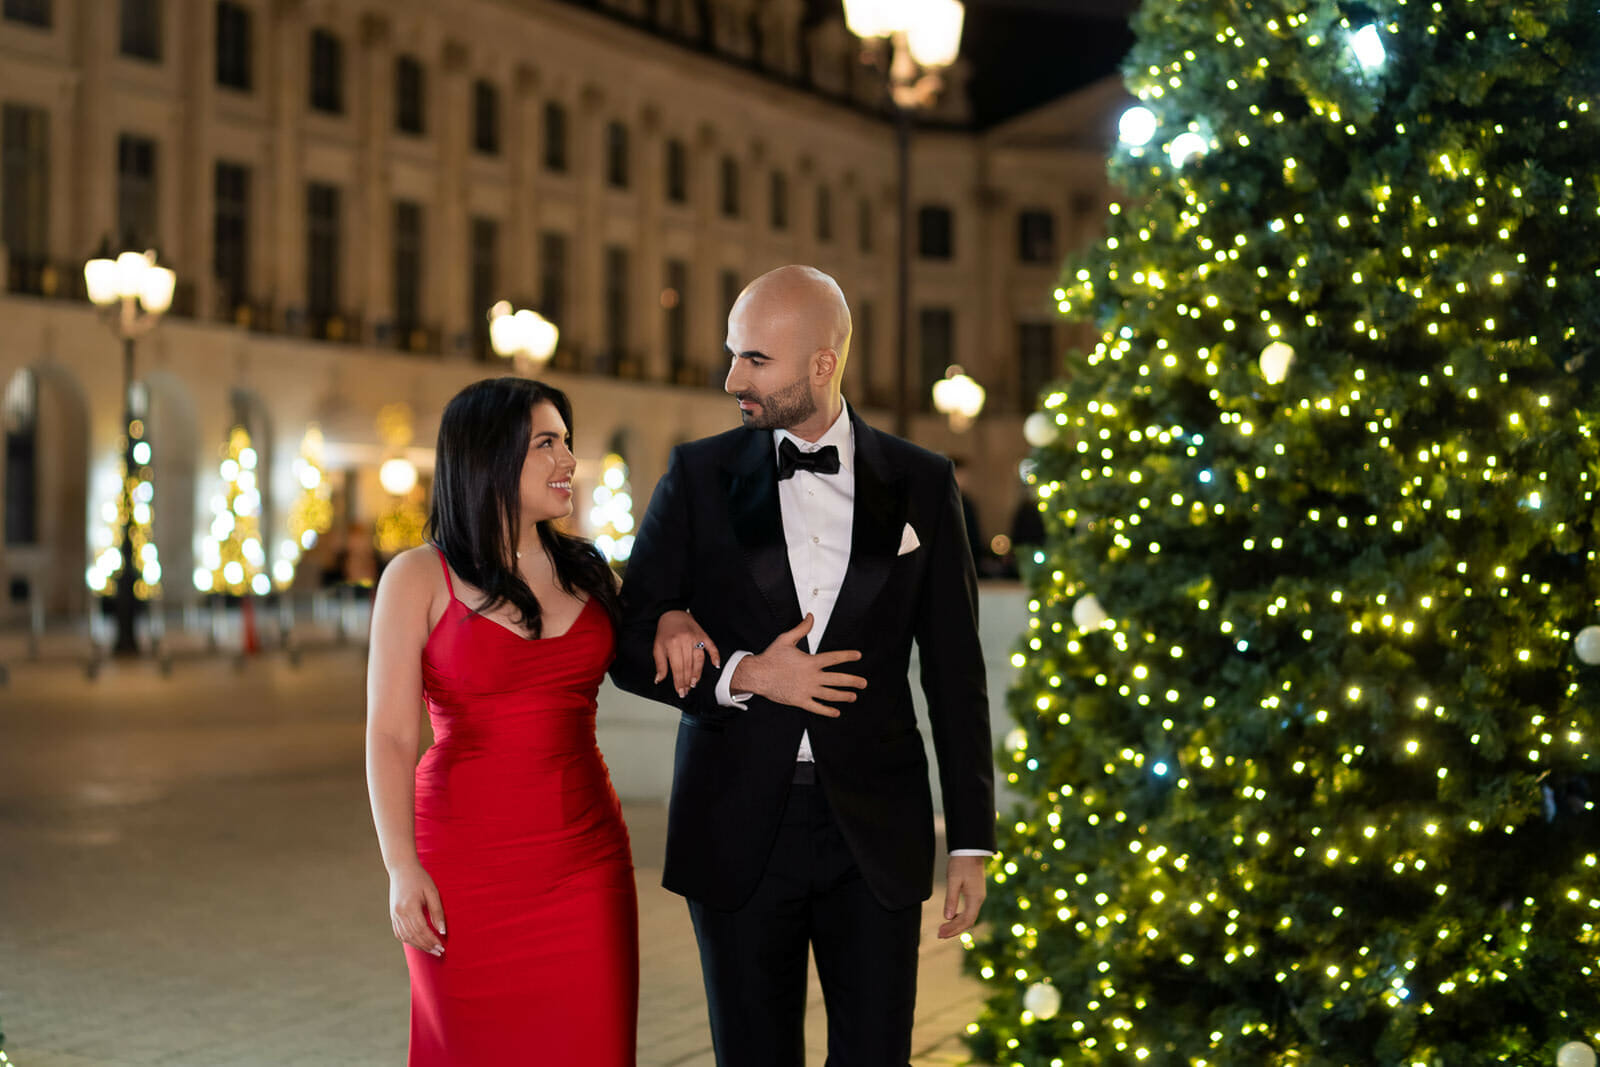 Paris engagement photos at Place Vendôme Paris with Christmas trees lit up